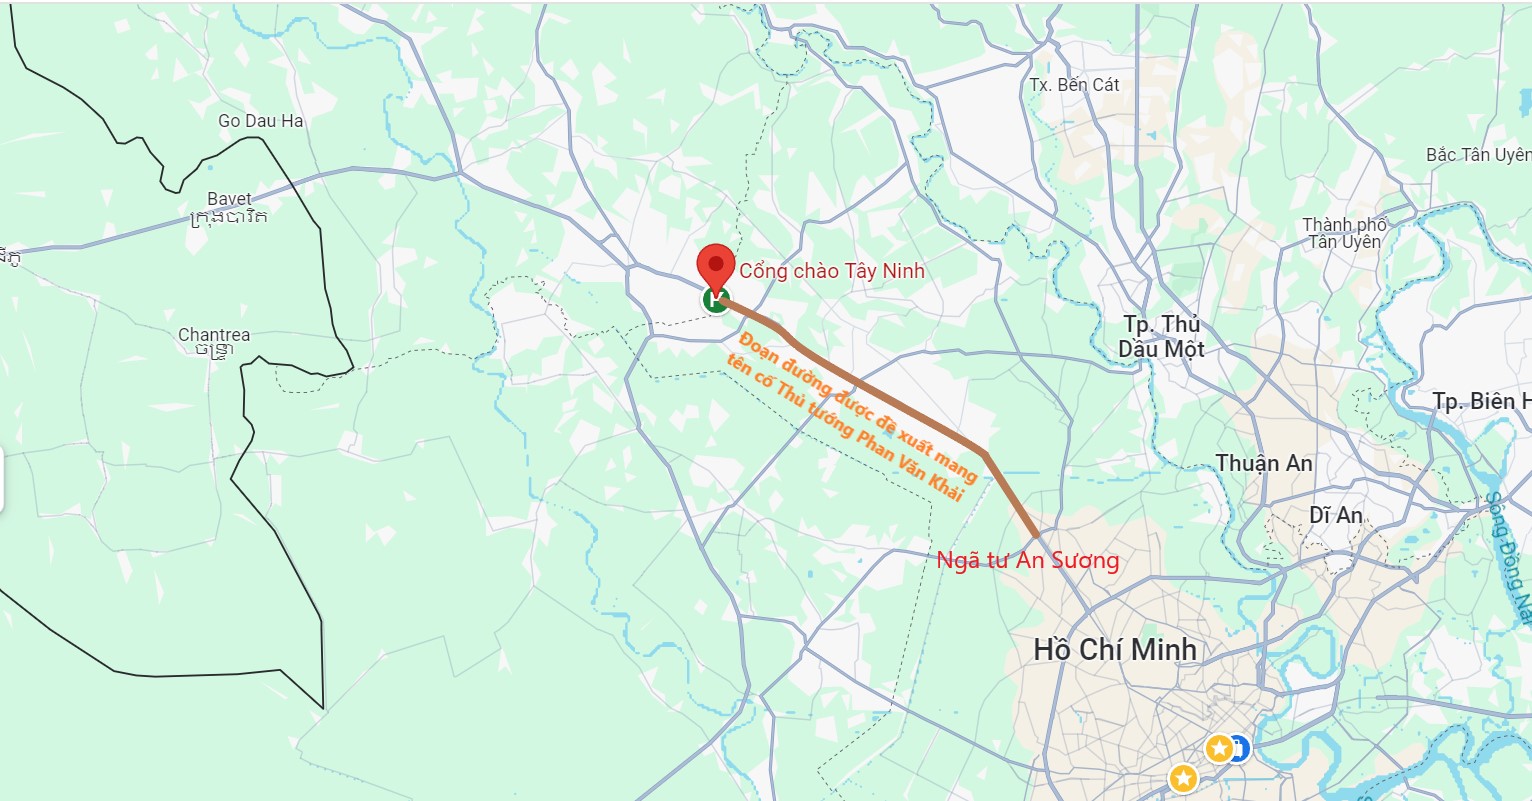 Quốc lộ 22 qua TP.HCM được đề xuất đặt tên cố Thủ tướng Phan Văn Khải - Ảnh 2.